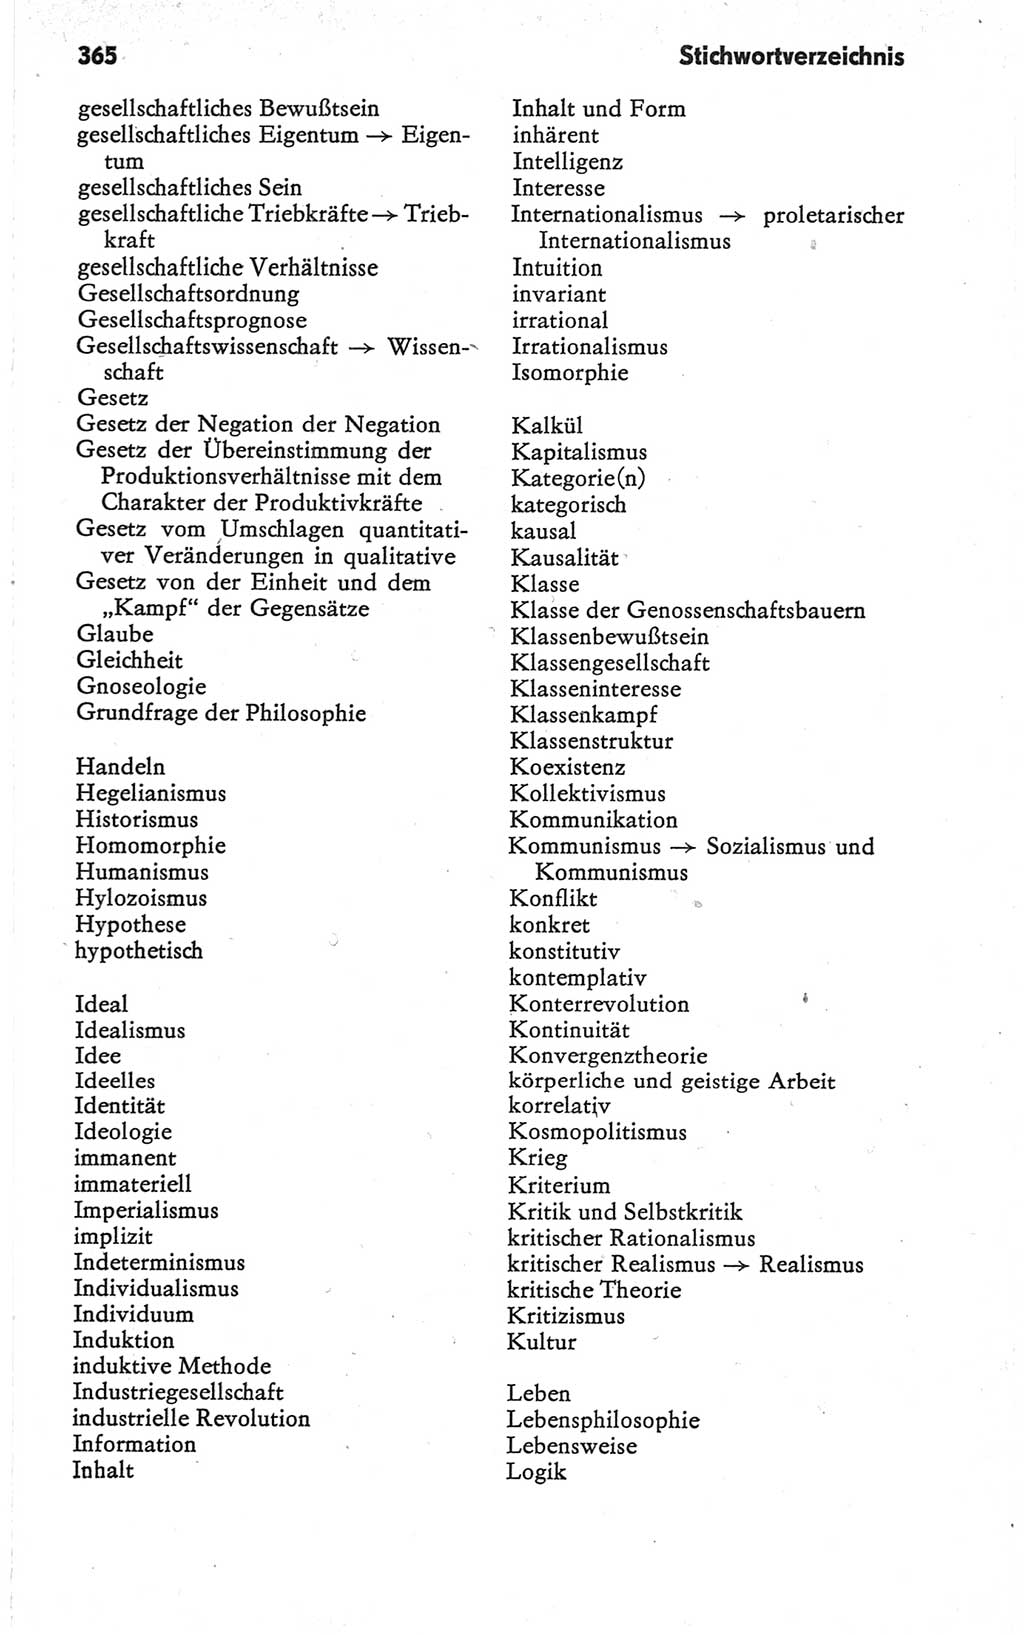 Kleines Wörterbuch der marxistisch-leninistischen Philosophie [Deutsche Demokratische Republik (DDR)] 1979, Seite 365 (Kl. Wb. ML Phil. DDR 1979, S. 365)